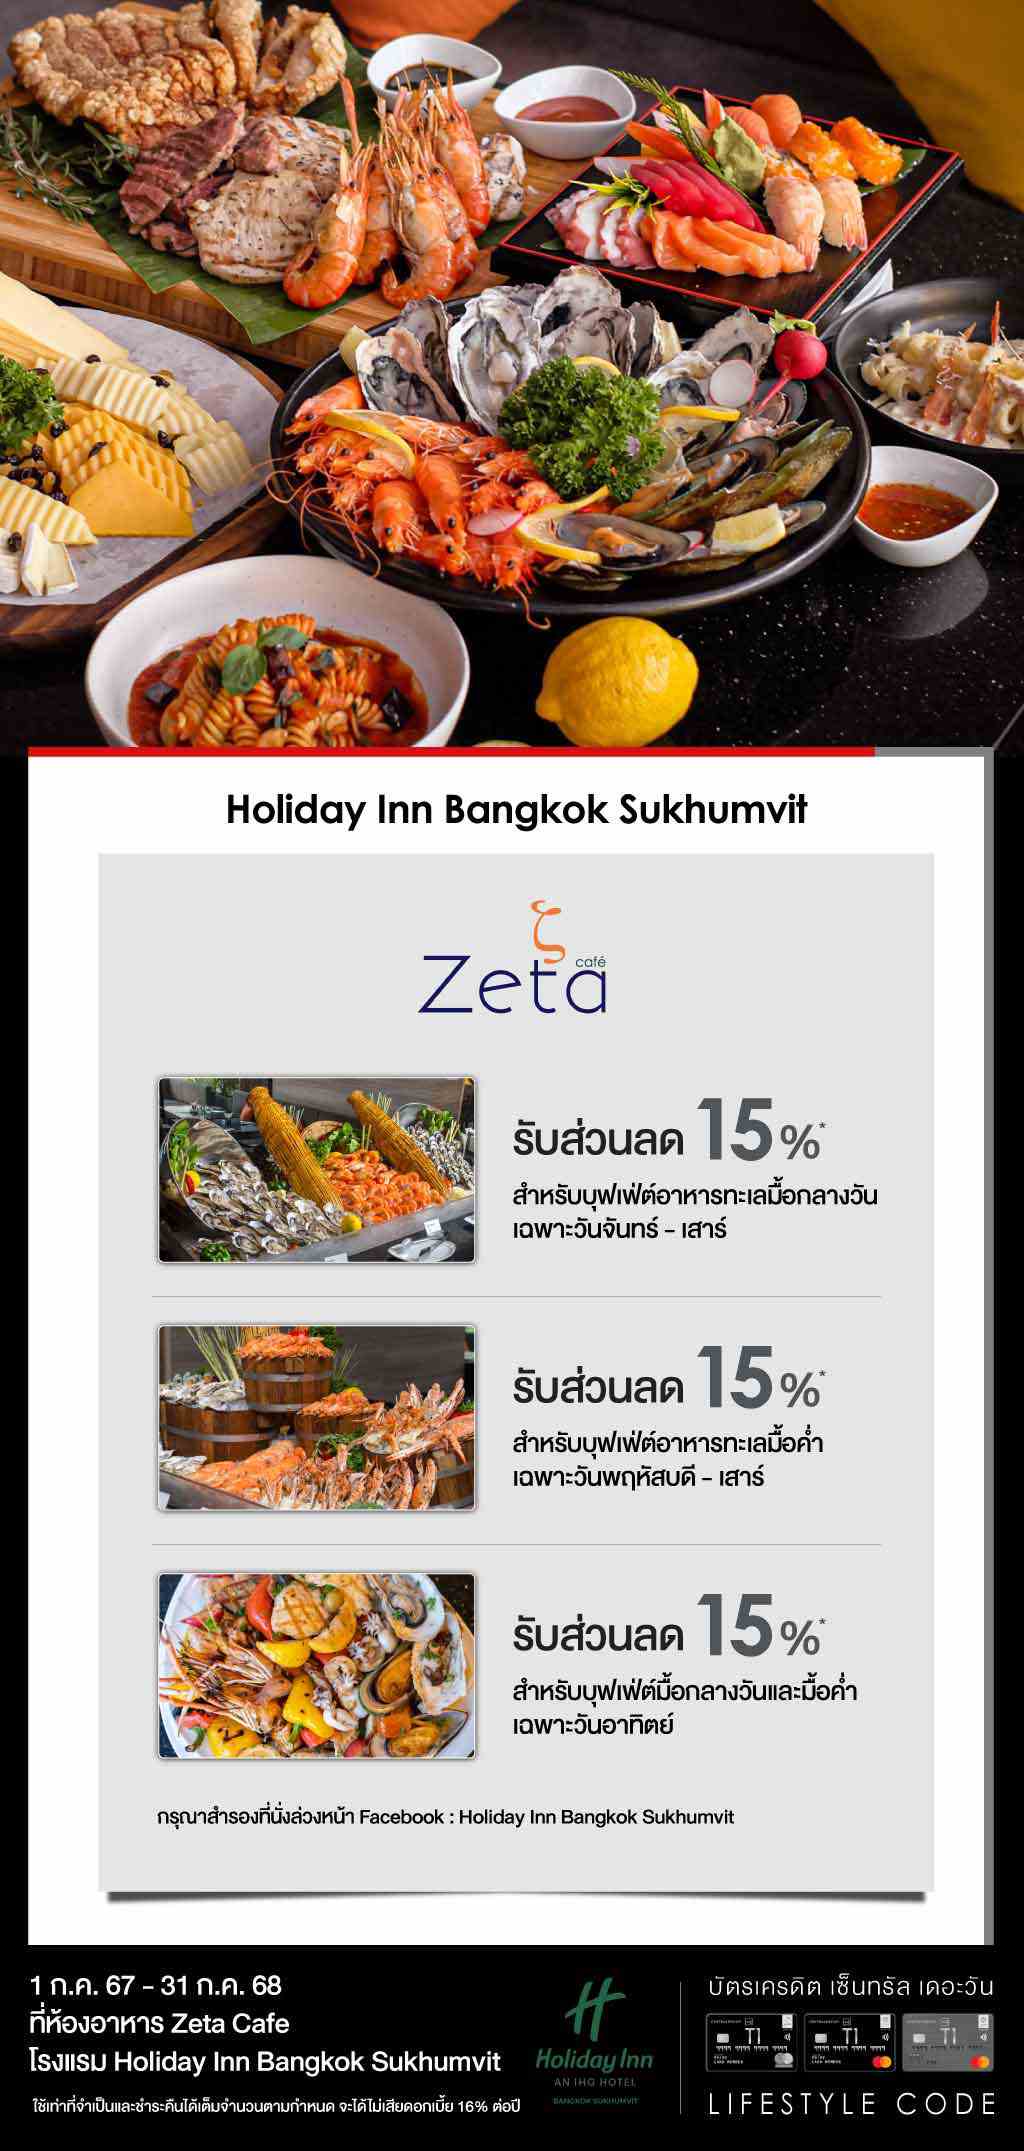 รับส่วนลดสูงสุด 15%* ที่ห้องอาหาร Zeta Cafe โรงแรม Holiday Inn Bangkok Sukhumvit | บัตรเครดิต | สมัครบัตรเครดิต | สมัครบัตรเครดิตออนไลน์ | สิทธิประโยชน์บัตรเครดิต | สมัครสินเชื่อออนไลน์ | บัตรเครดิต ผ่อน 0% | บัตรเครดิต ใช้ต่างประเทศ | บัตรเครดิต ท่องเที่ยว | บัตรเครดิตเติมน้ำมัน